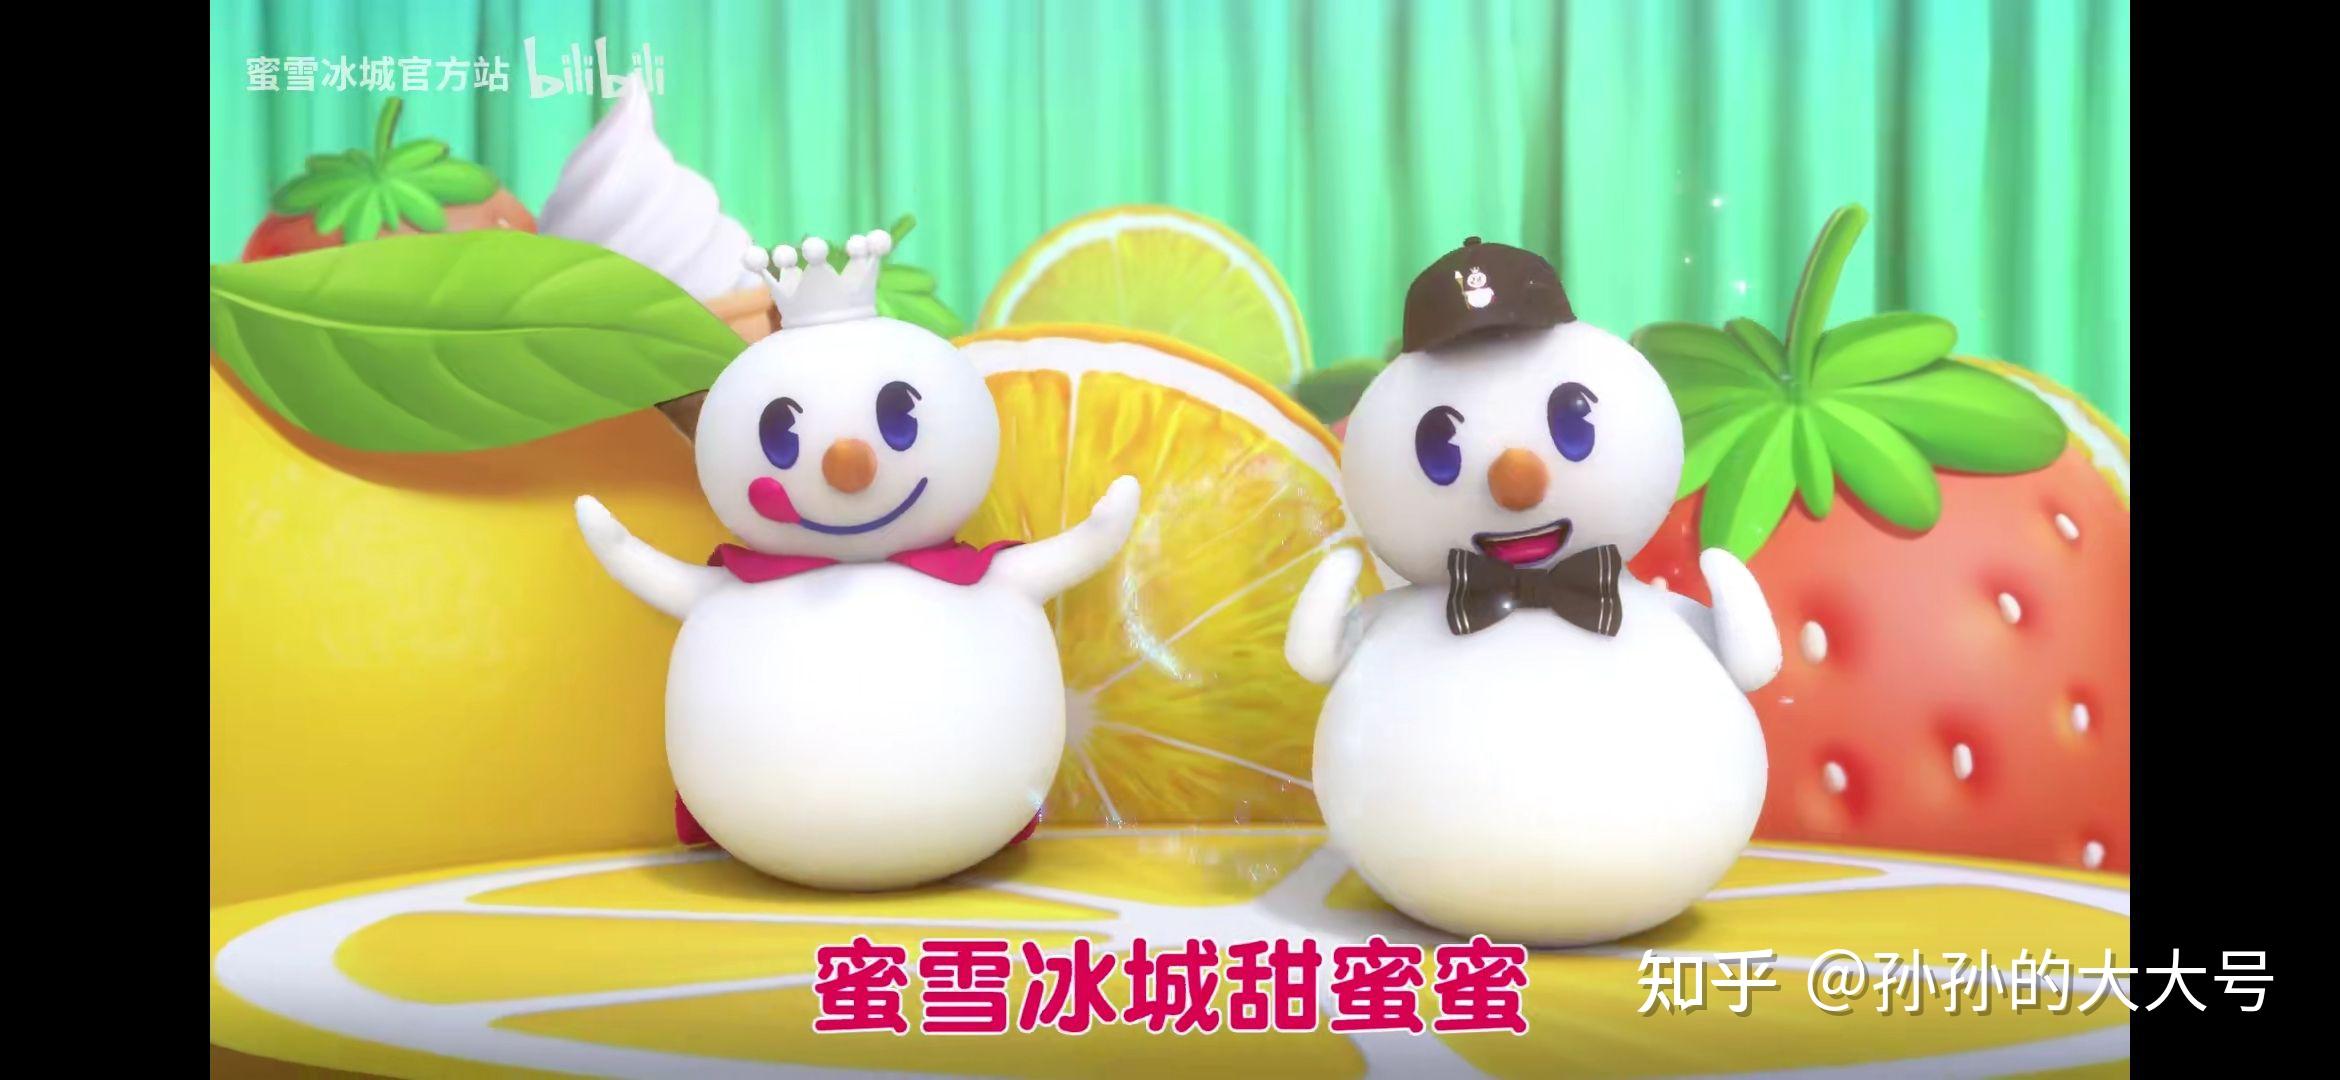 蜜雪冰城动画 mv 中出现的三个雪人是不是有不同的